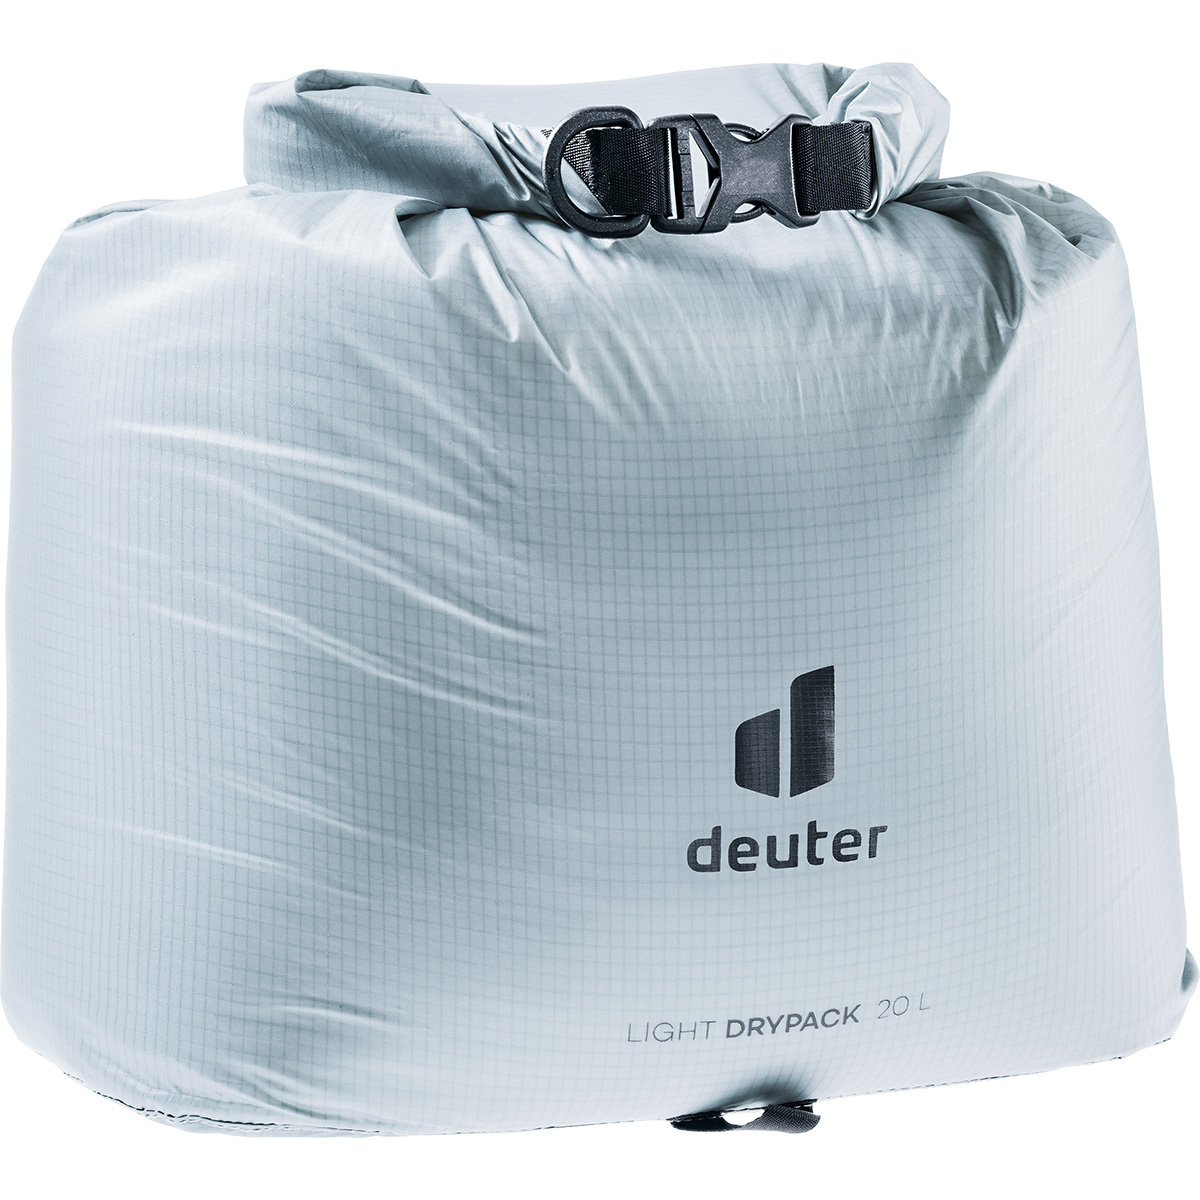 Deuter Light Drypack von Deuter